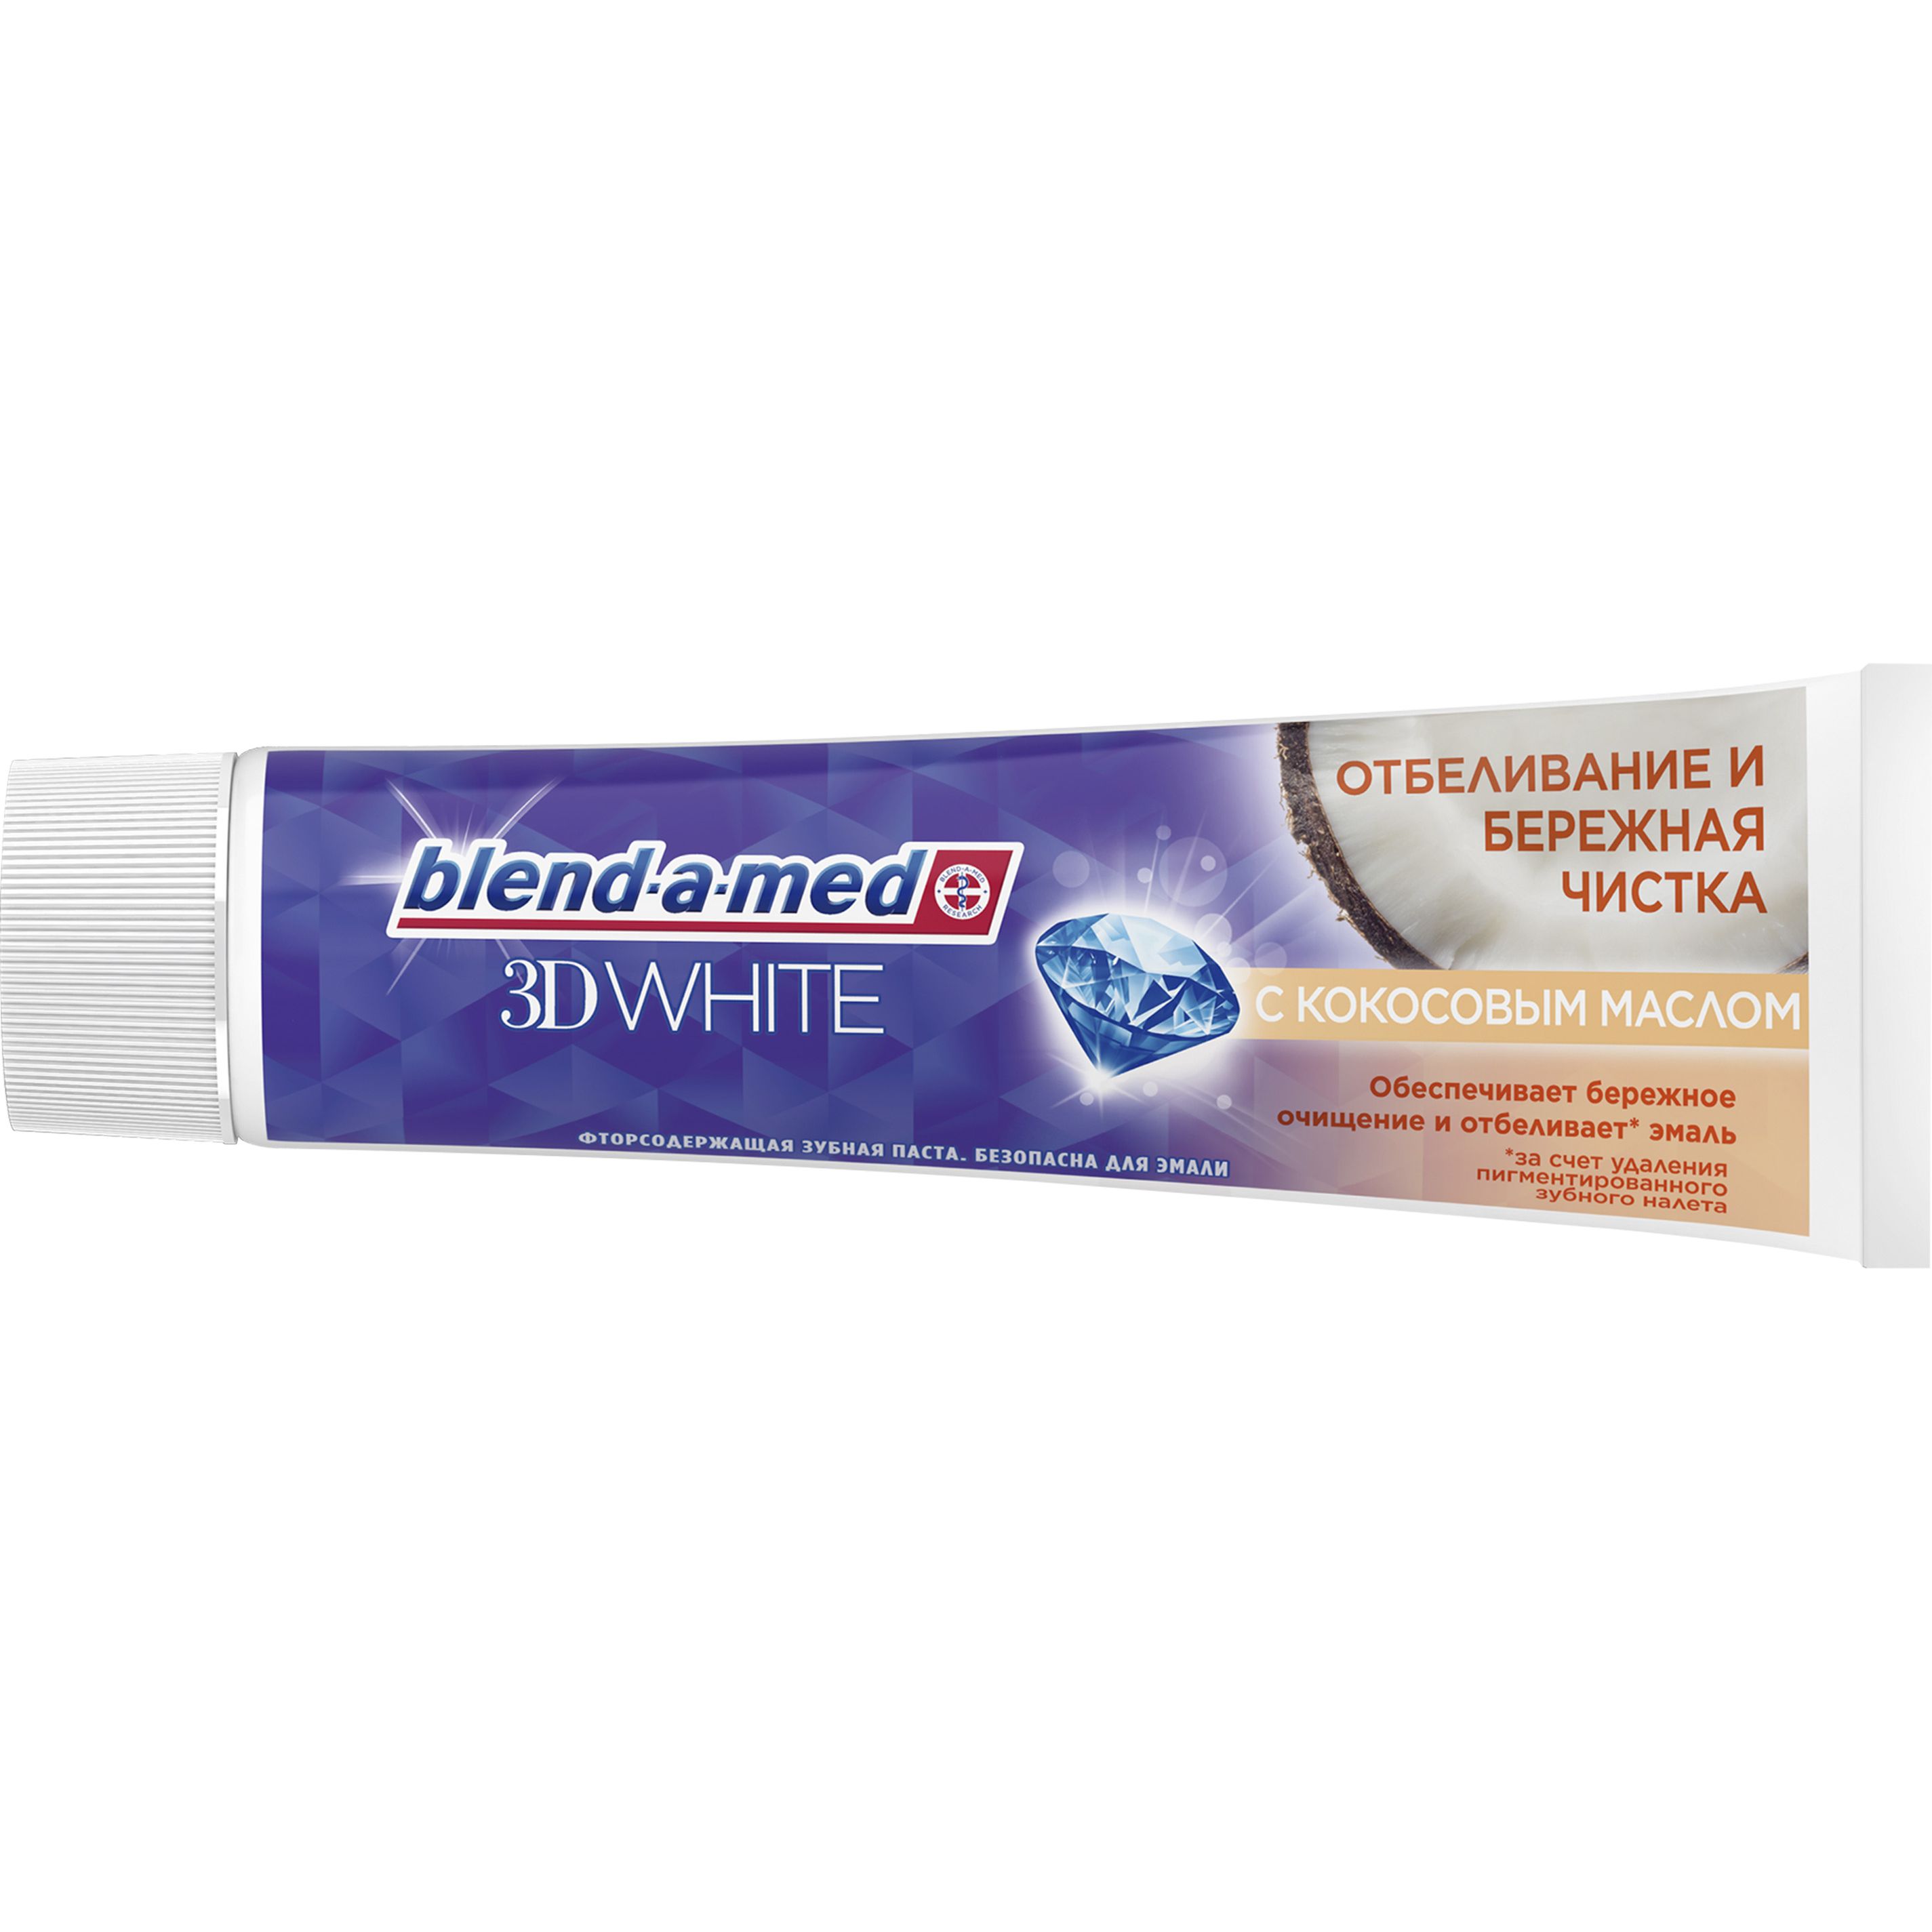 Зубная паста Blend-a-med 3D White Бережная чистка с кокосовым маслом 100 мл - фото 2